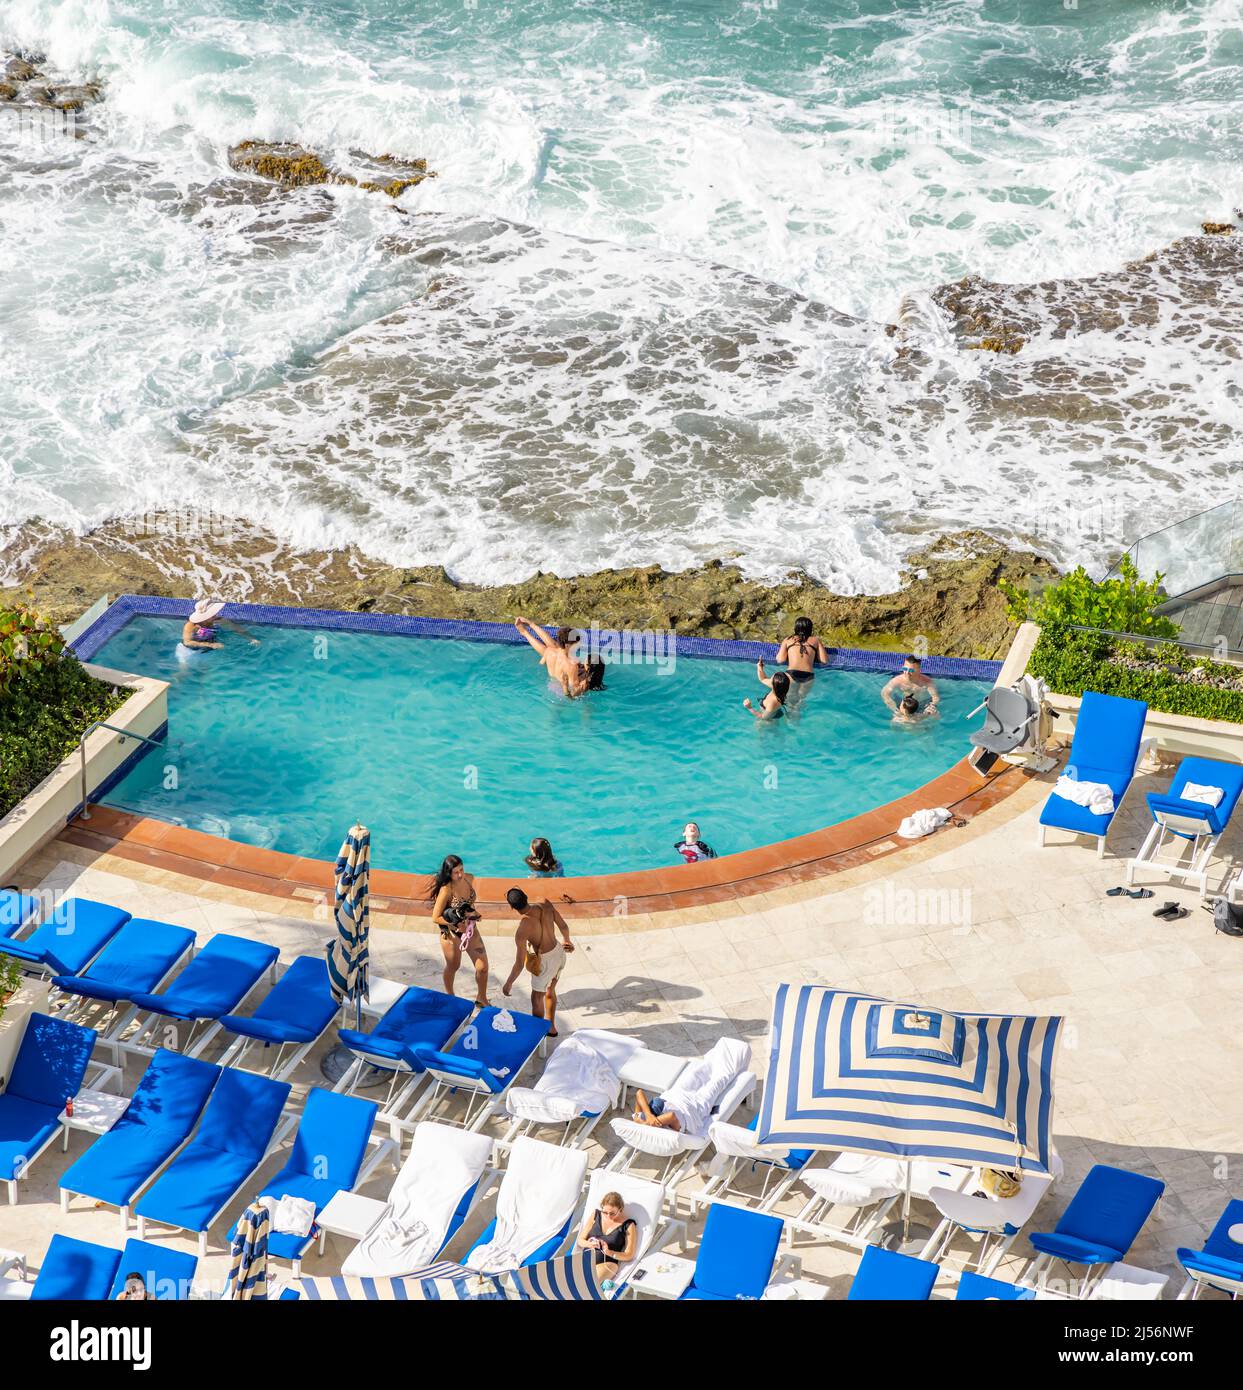 Ocean Side pool at the Condado Vanderbilt Hotel in Puerto Rico Stock Photo